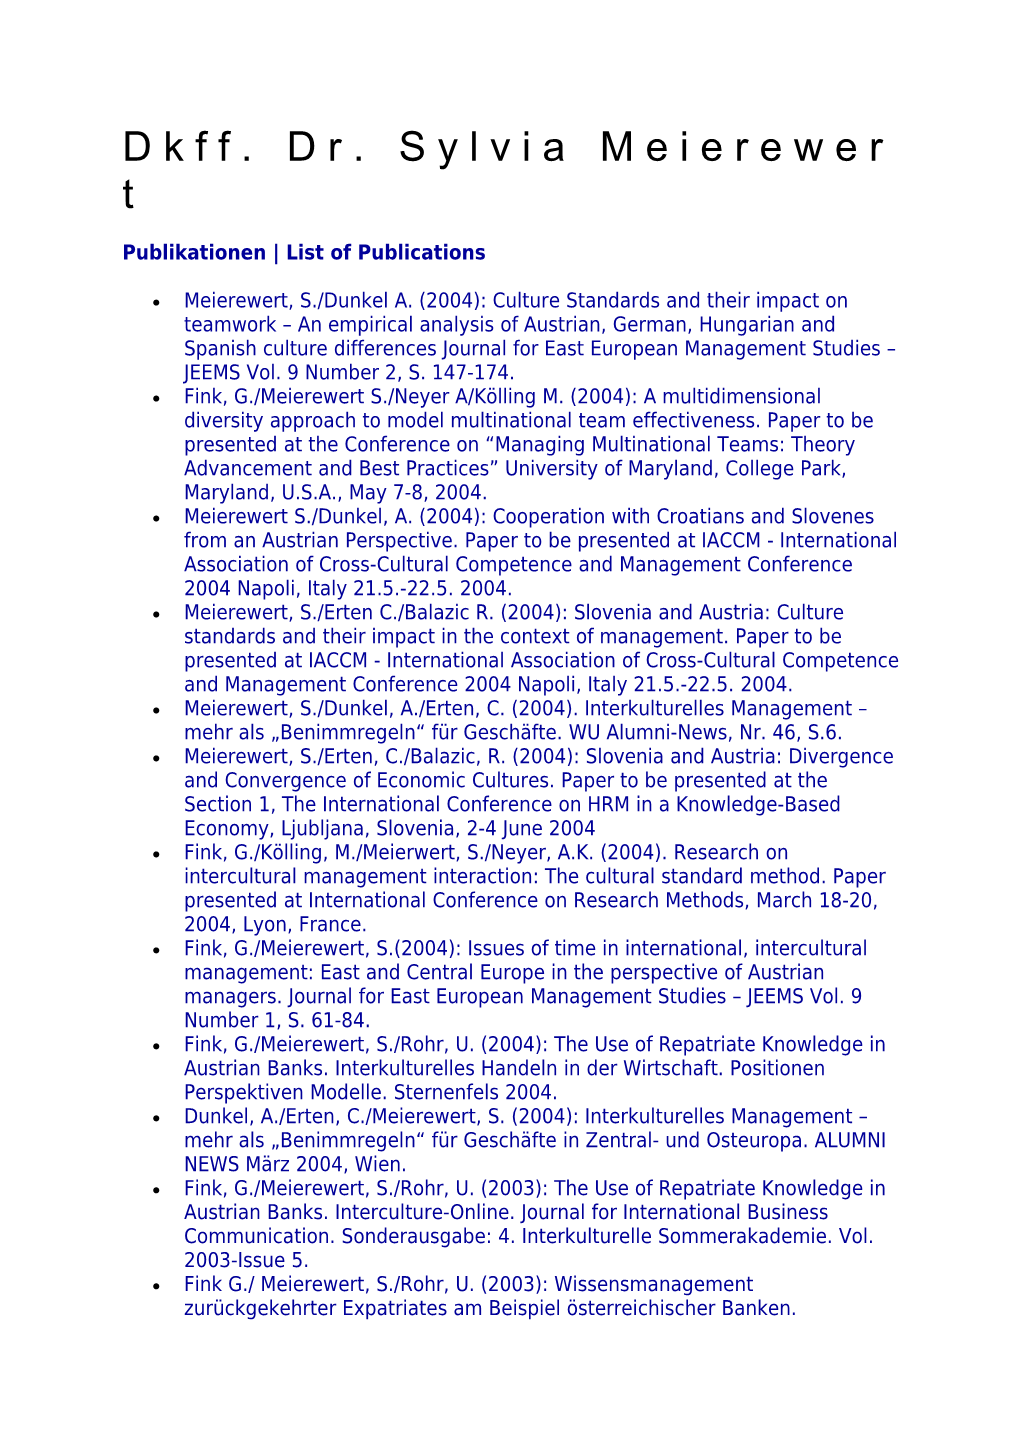 Publikationen List of Publications